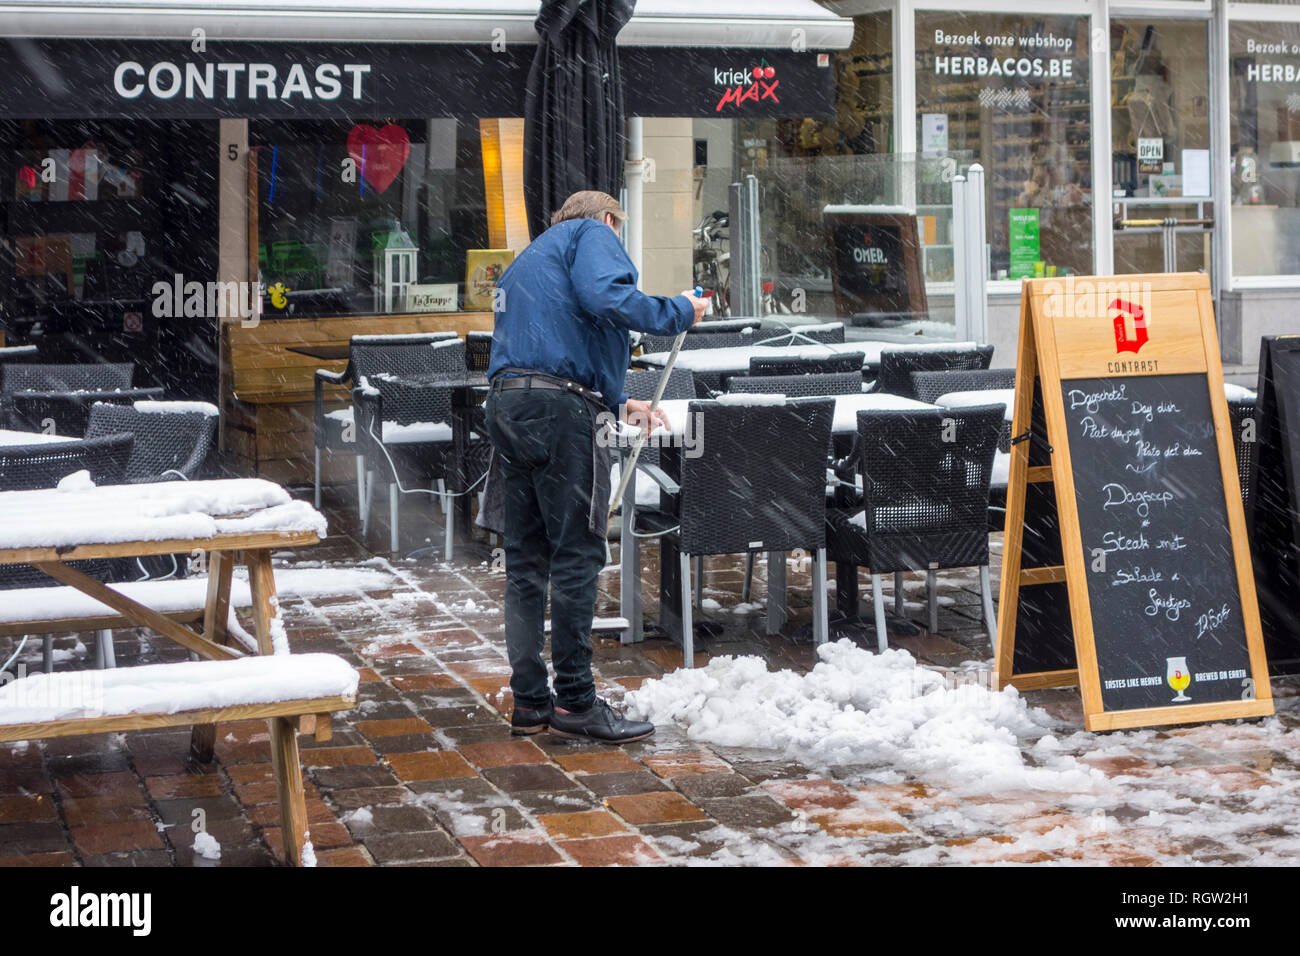 Restaurant/Pub besitzer Reinigung Cafe während Schneeregen/Schnee Dusche im  Winter in der Stadt Gent, Flandern, Belgien Stockfotografie - Alamy